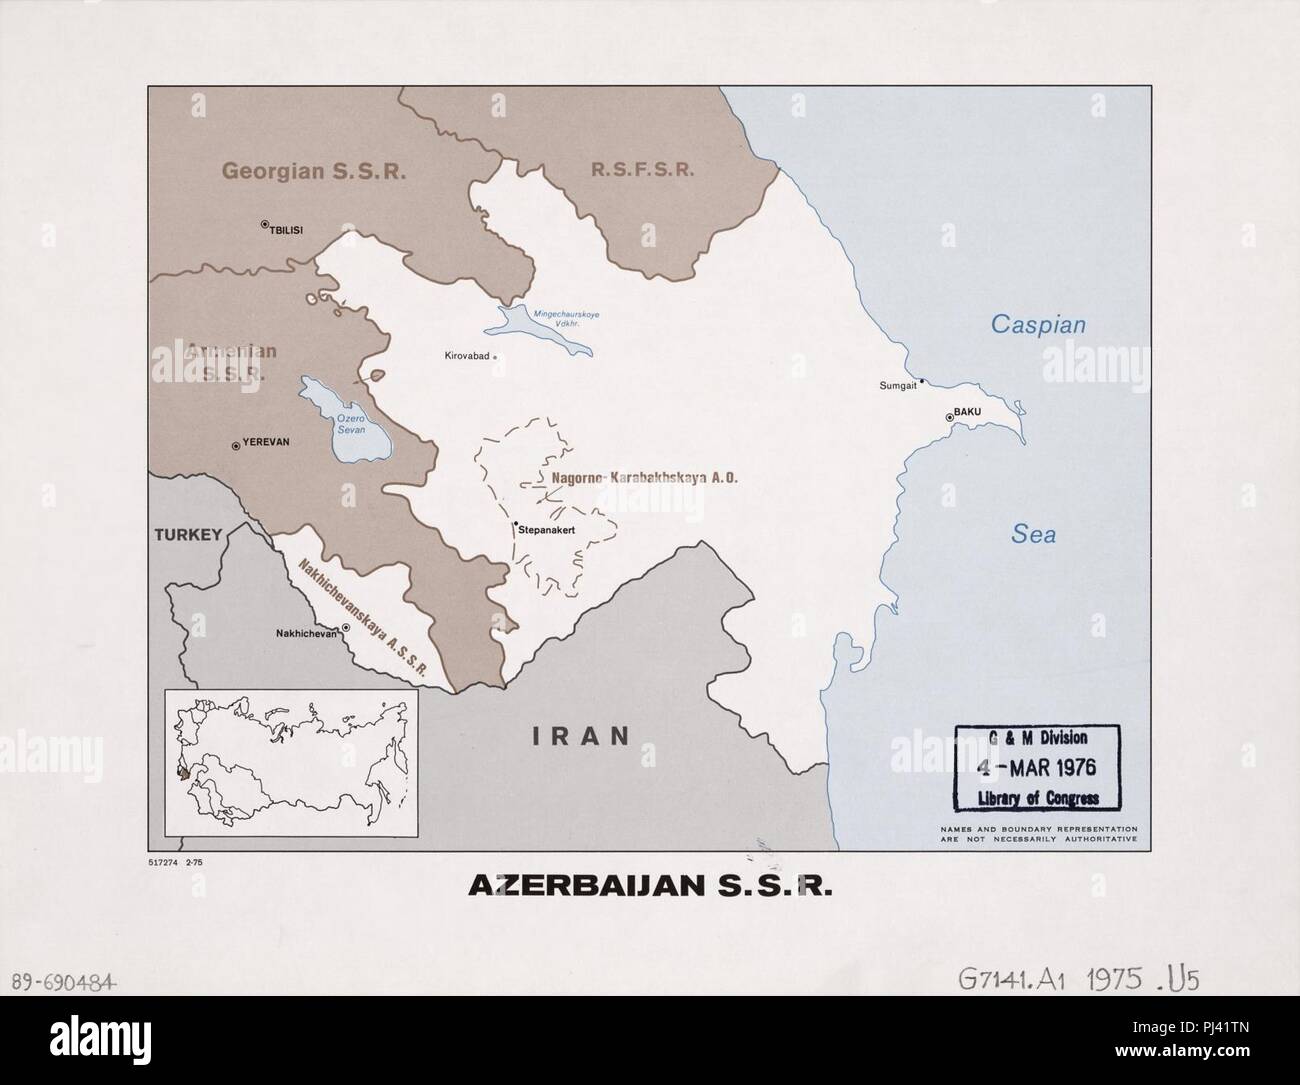 Azerbaigian S.S.R. mappa 1975. Foto Stock